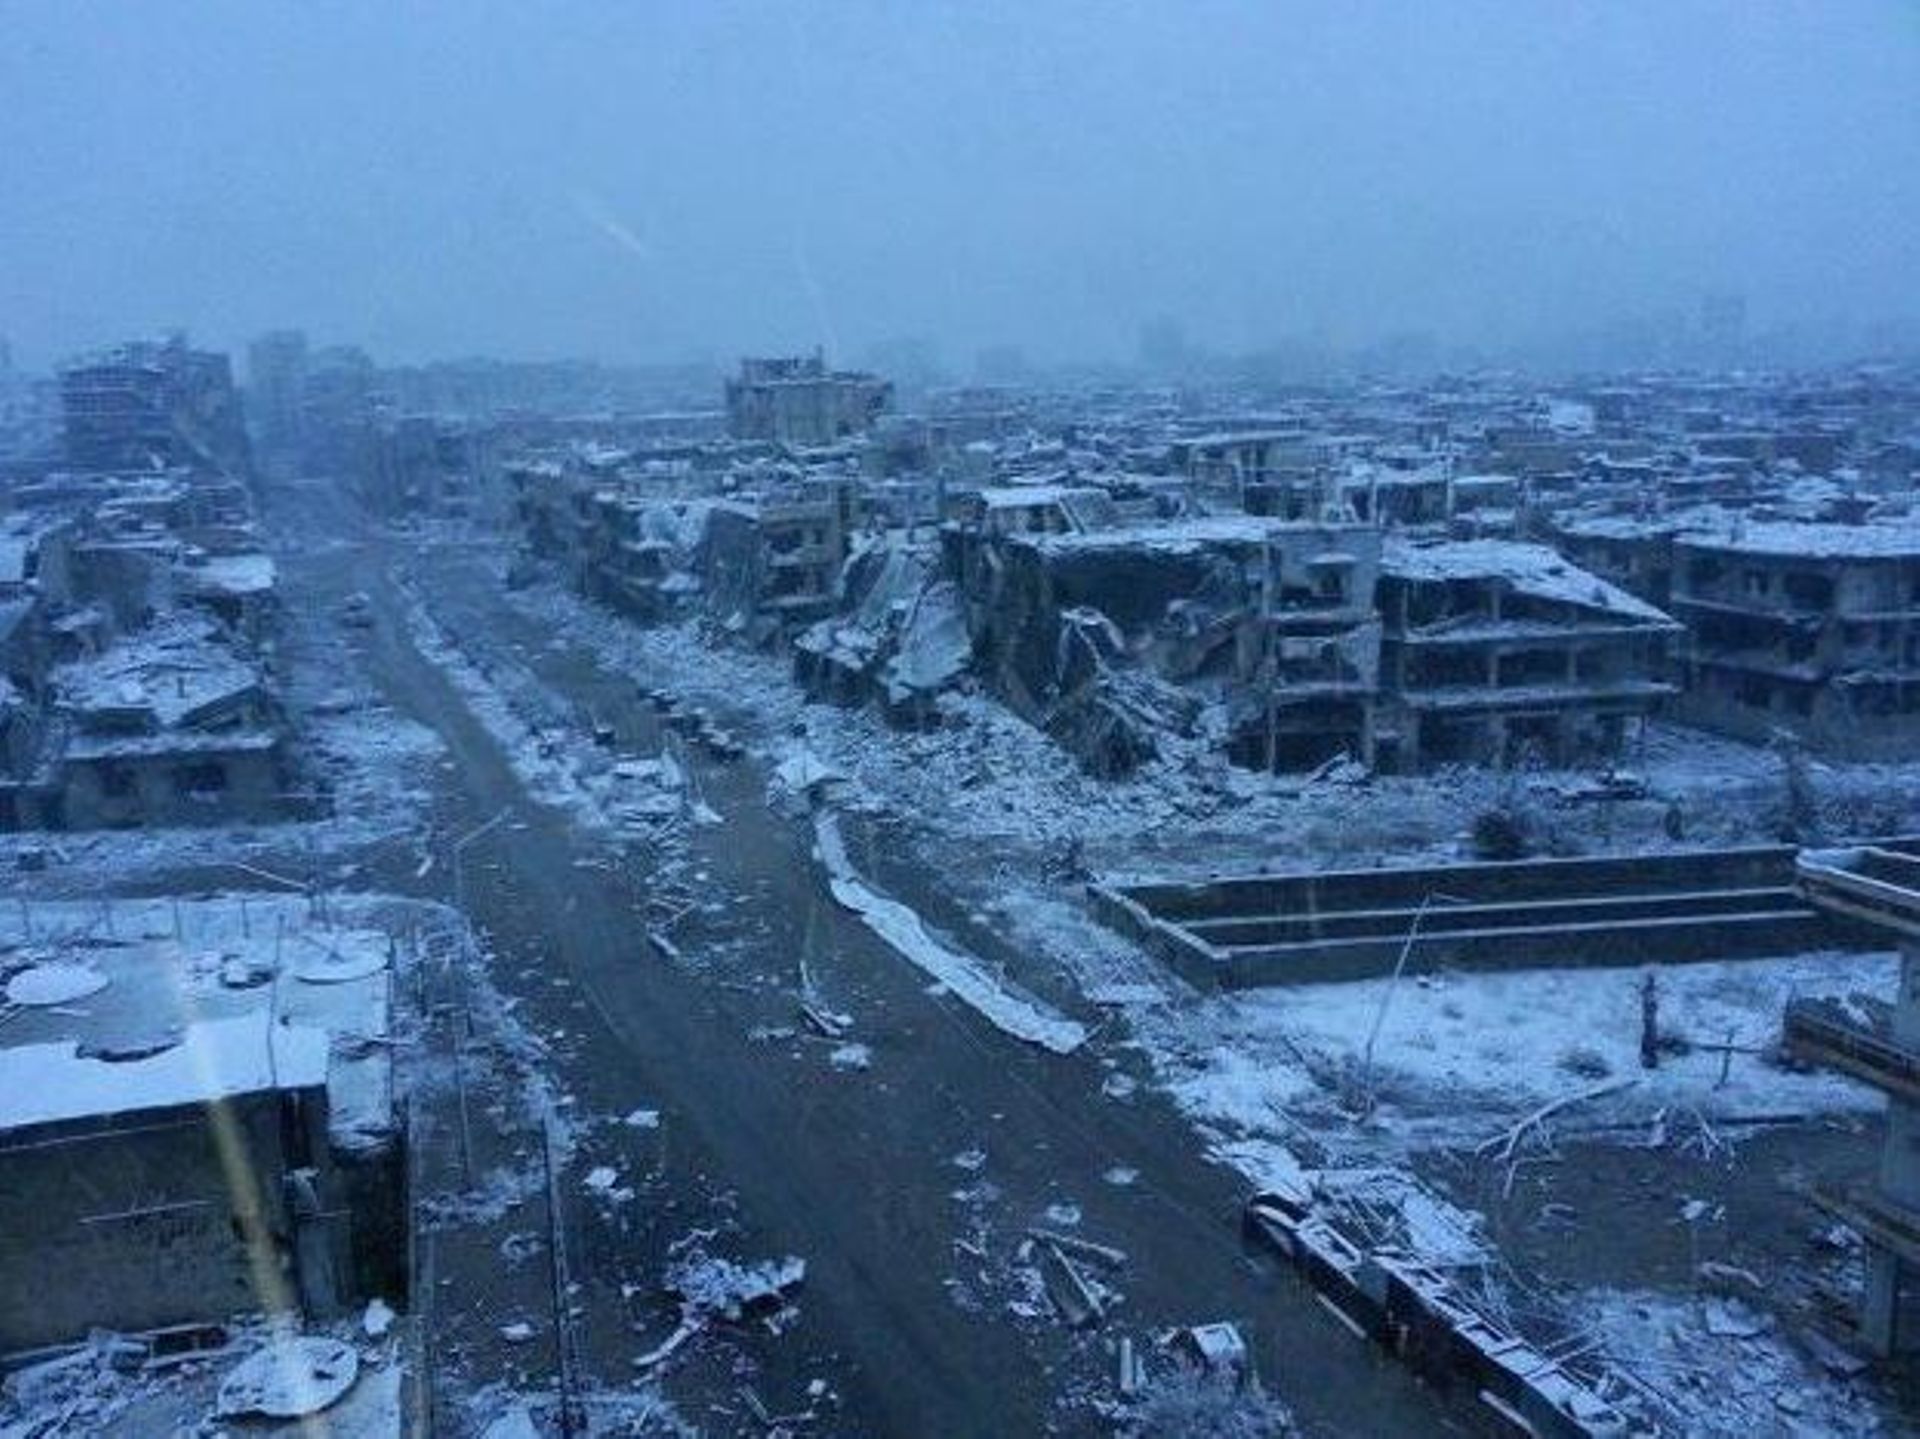 Une photo, sur un blog anti-gouvernemental, montre la ville de Homs, détruite, sous la neige